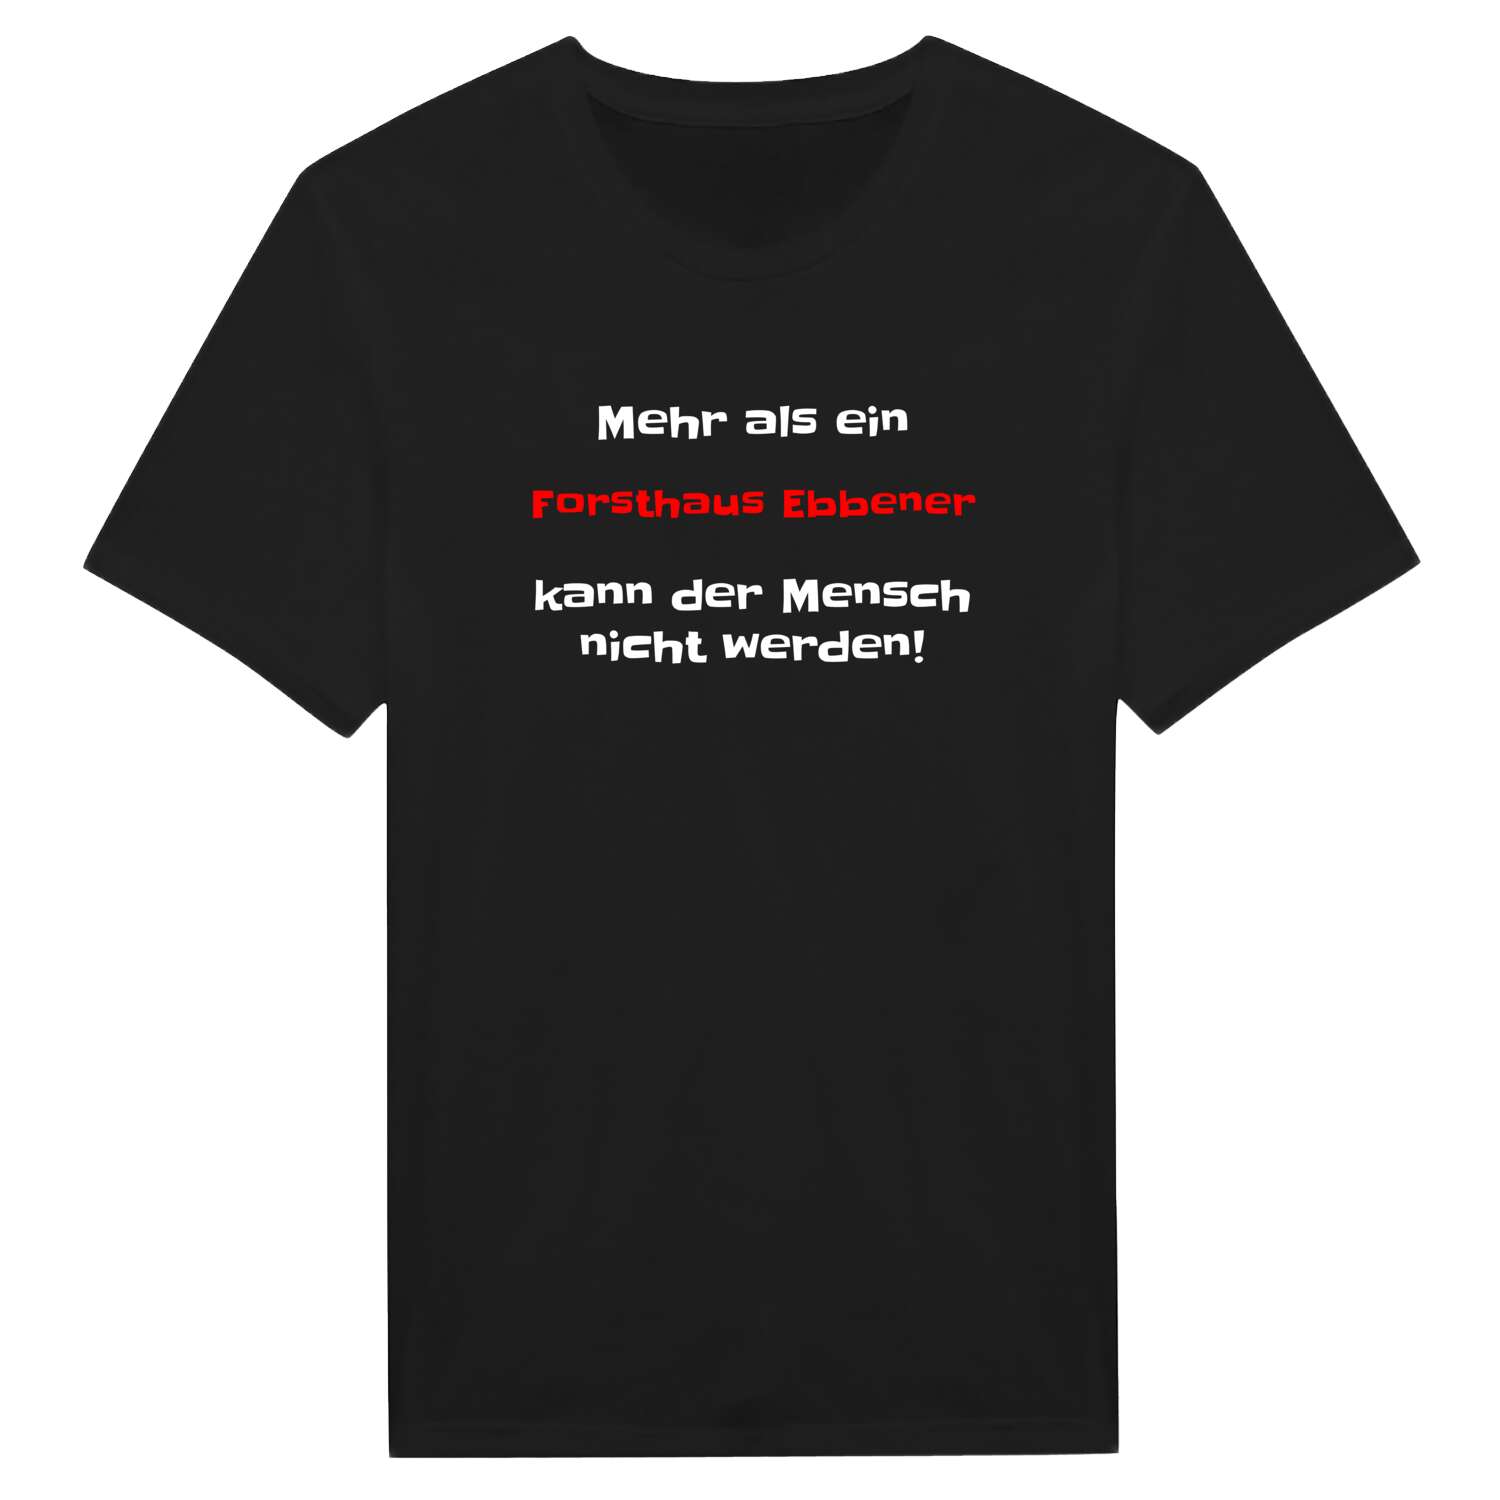 Forsthaus Ebbe T-Shirt »Mehr als ein«